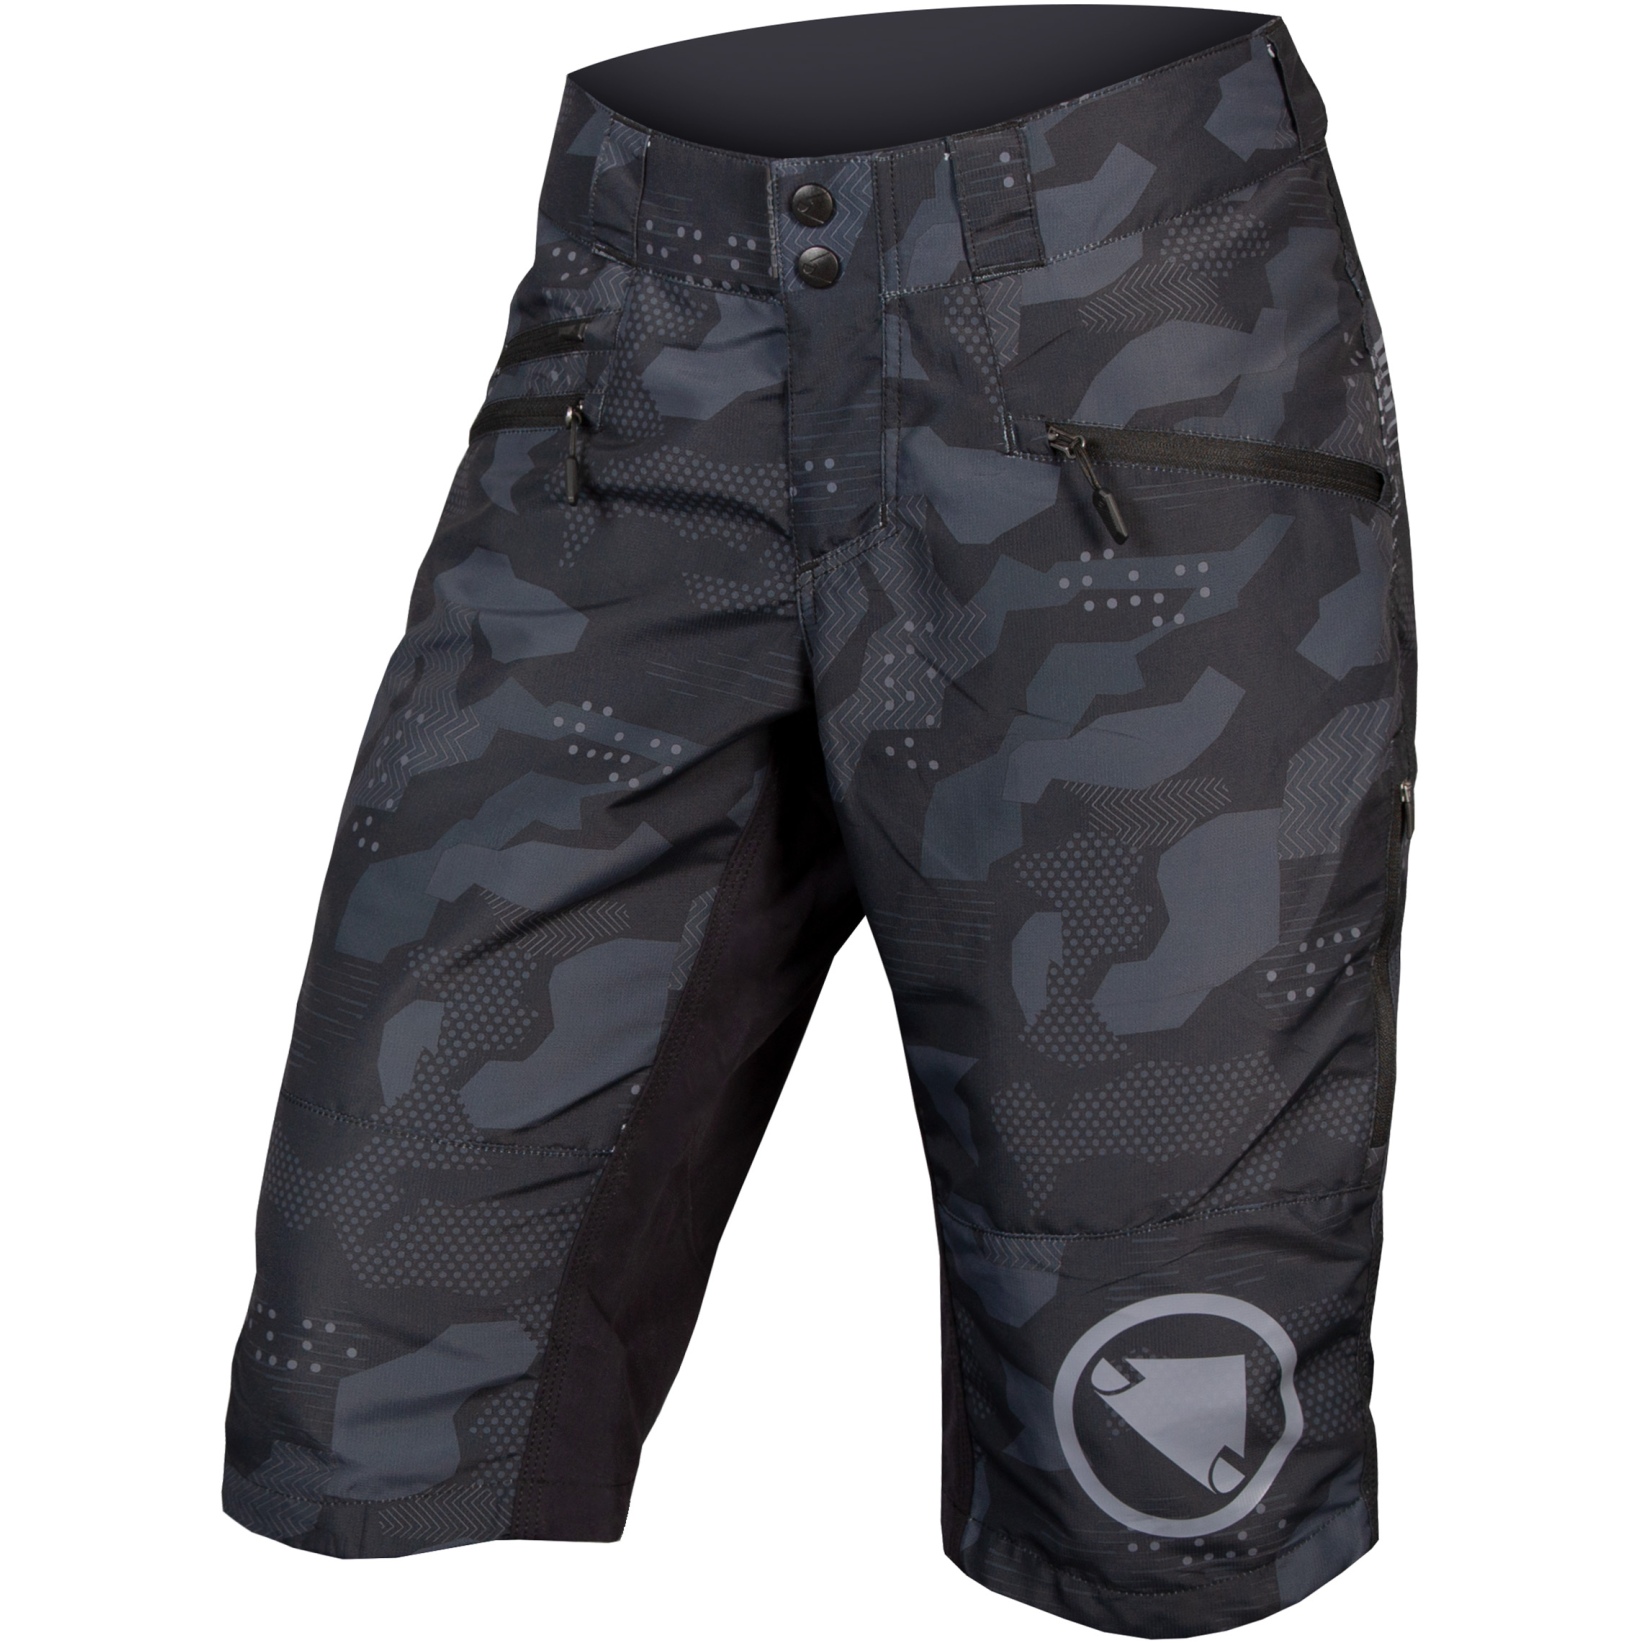 Produktbild von Endura SingleTrack II Shorts Damen - camouflage-dunkel